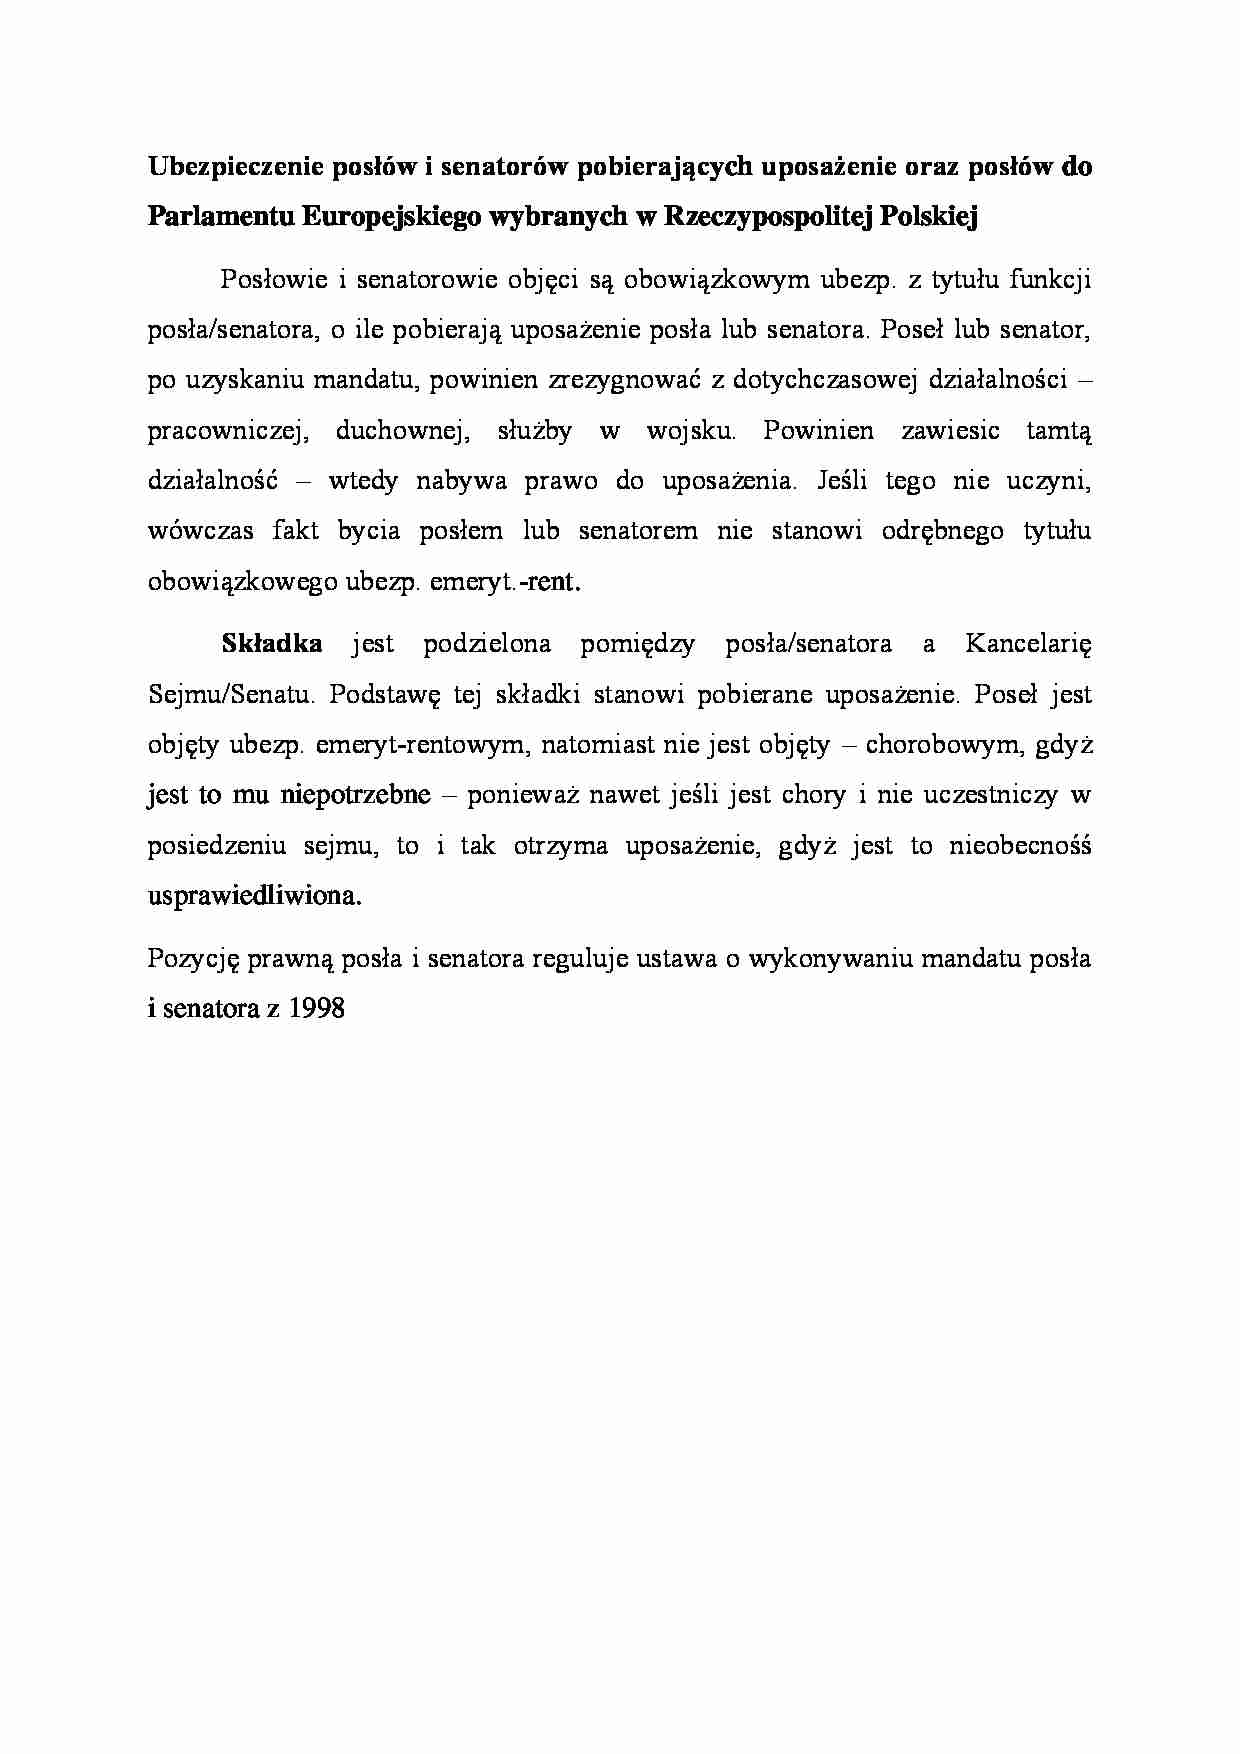 Ubezpieczenie posłów i senatorw pobierających uposażenie oraz posłów do Parlamentu Europejskiego wybranych w Rzeczypospolitej Polskiej - strona 1